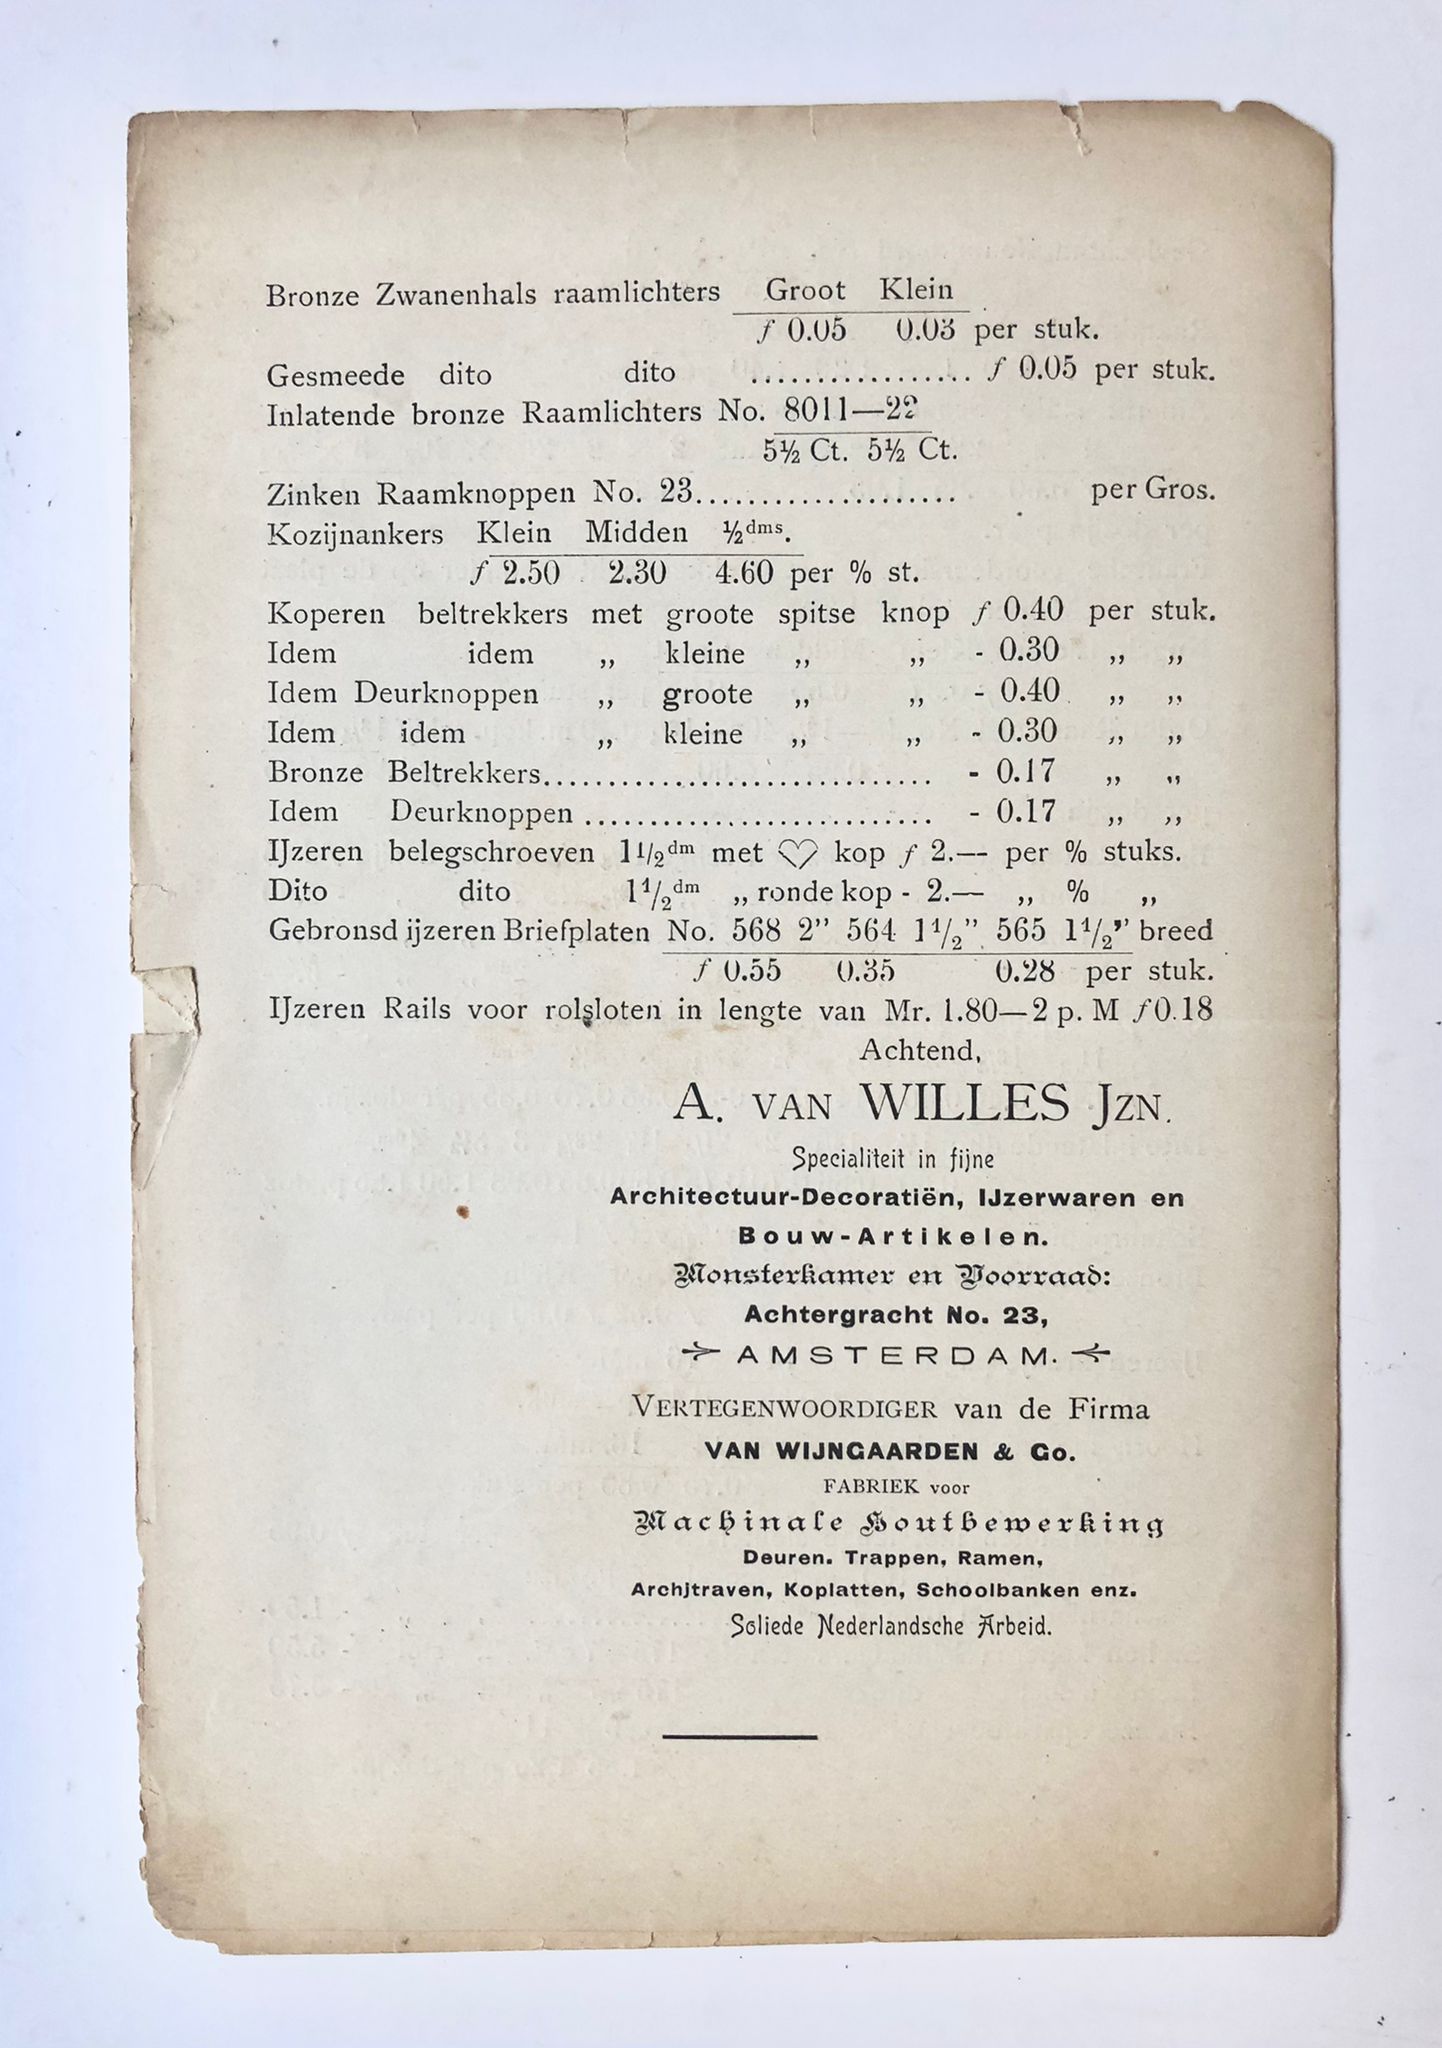 [Price list, prijscourant ca 1900] Prijscourant van Fa. A. van Willes Jzn, achtergracht 23, Amsterdam, in ijzerwaren en bouwartikelen, 4 pp., ca 1900.